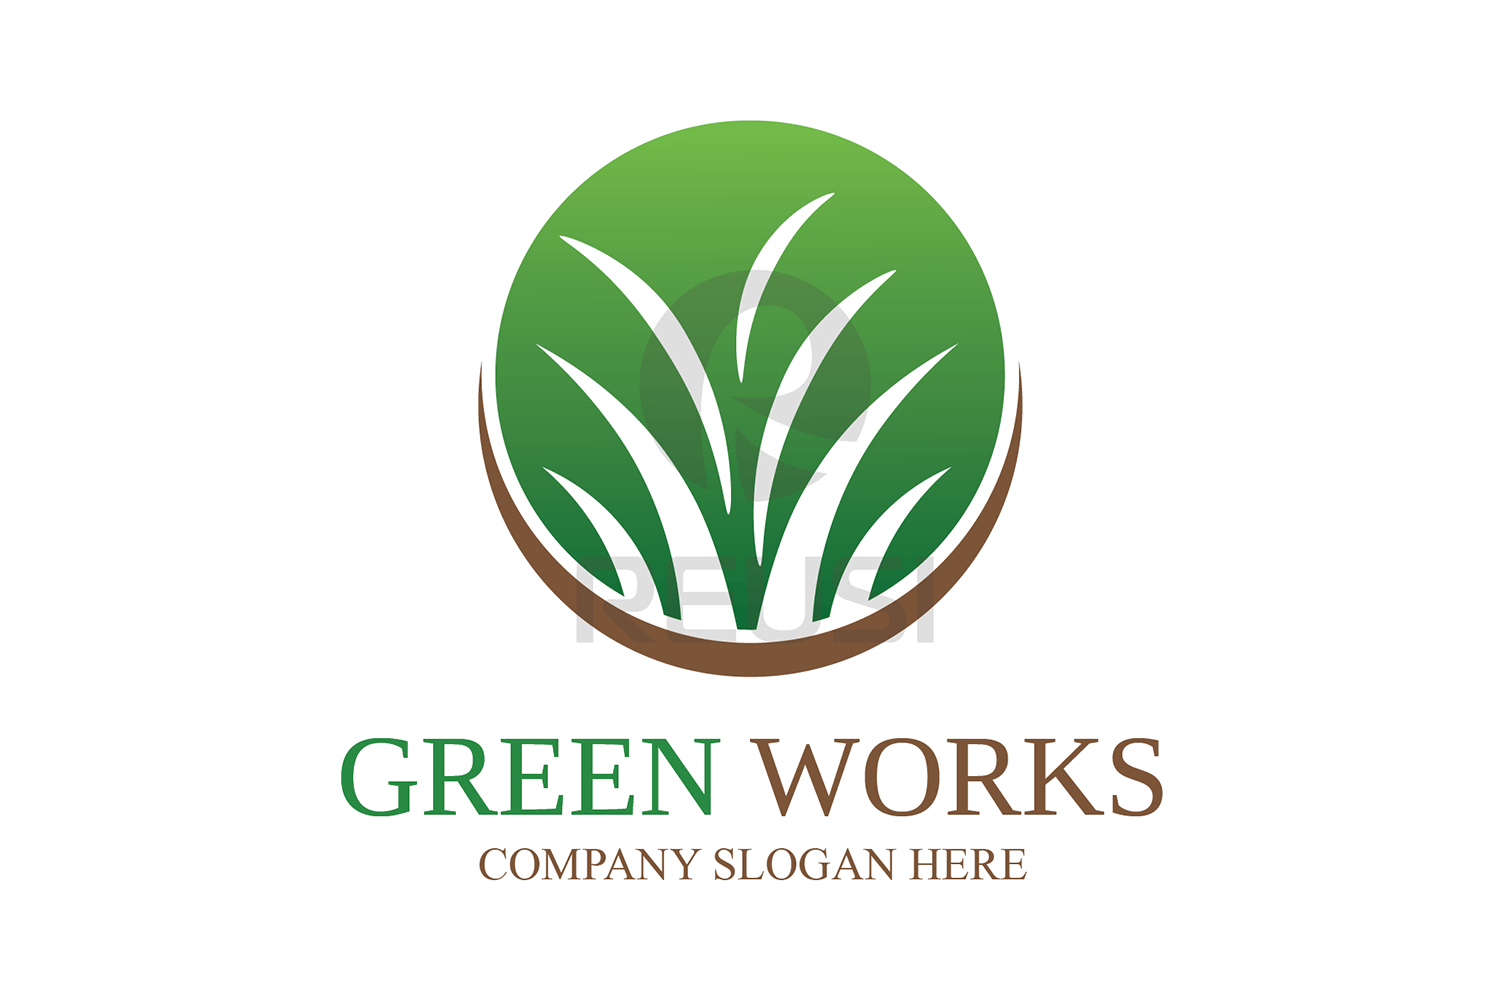 Greenworks Logo - Greenworks Landscaping Logo Template